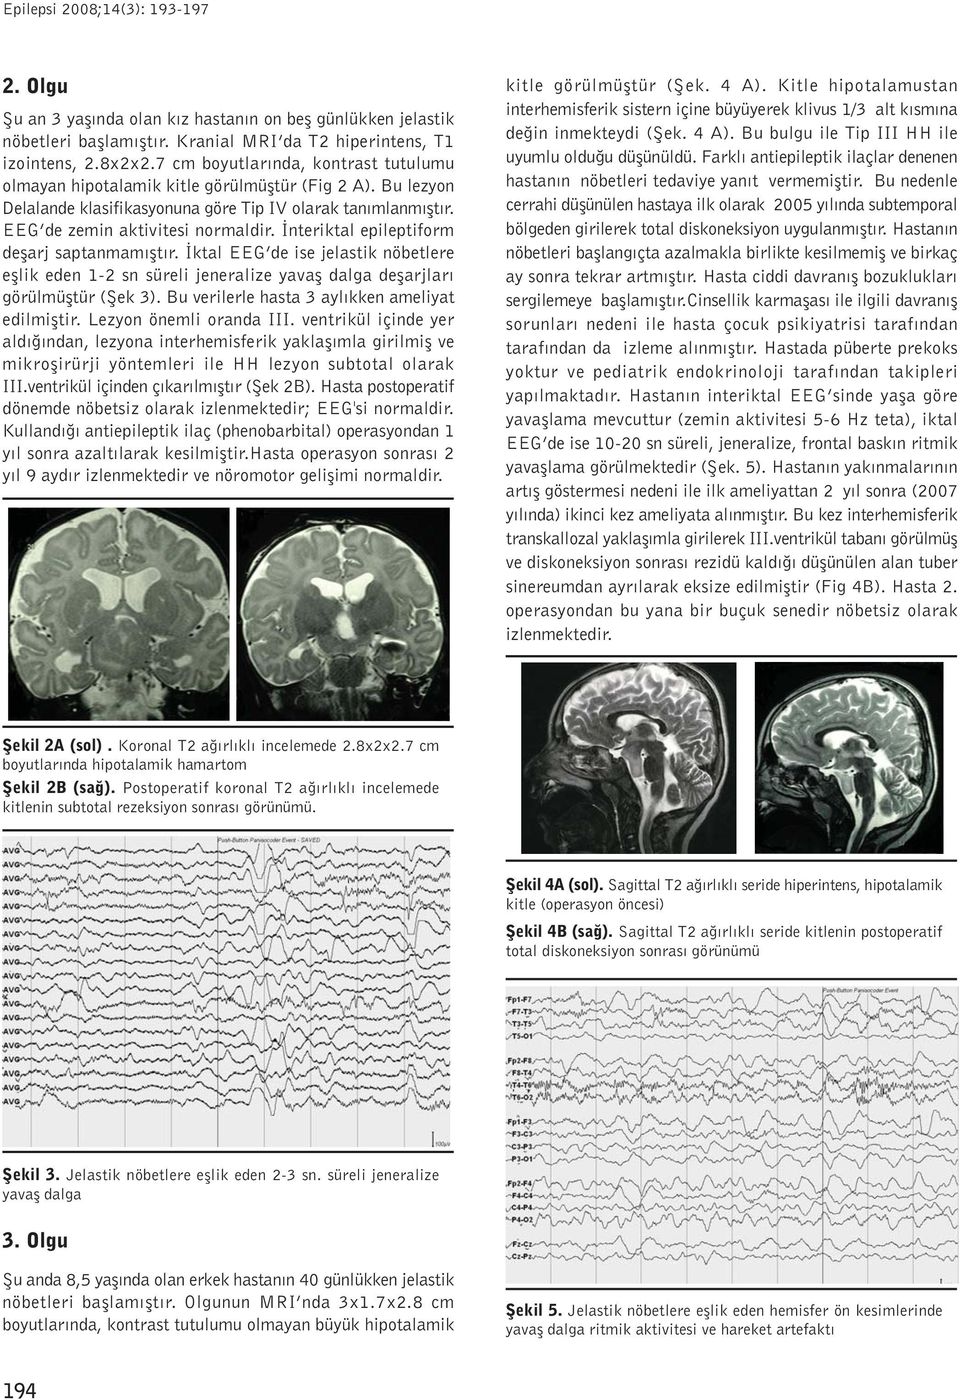 Ýnteriktal epileptiform deþarj saptanmamýþtýr. Ýktal EEG de ise jelastik nöbetlere eþlik eden 1-2 sn süreli jeneralize yavaþ dalga deþarjlarý görülmüþtür (Þek 3).